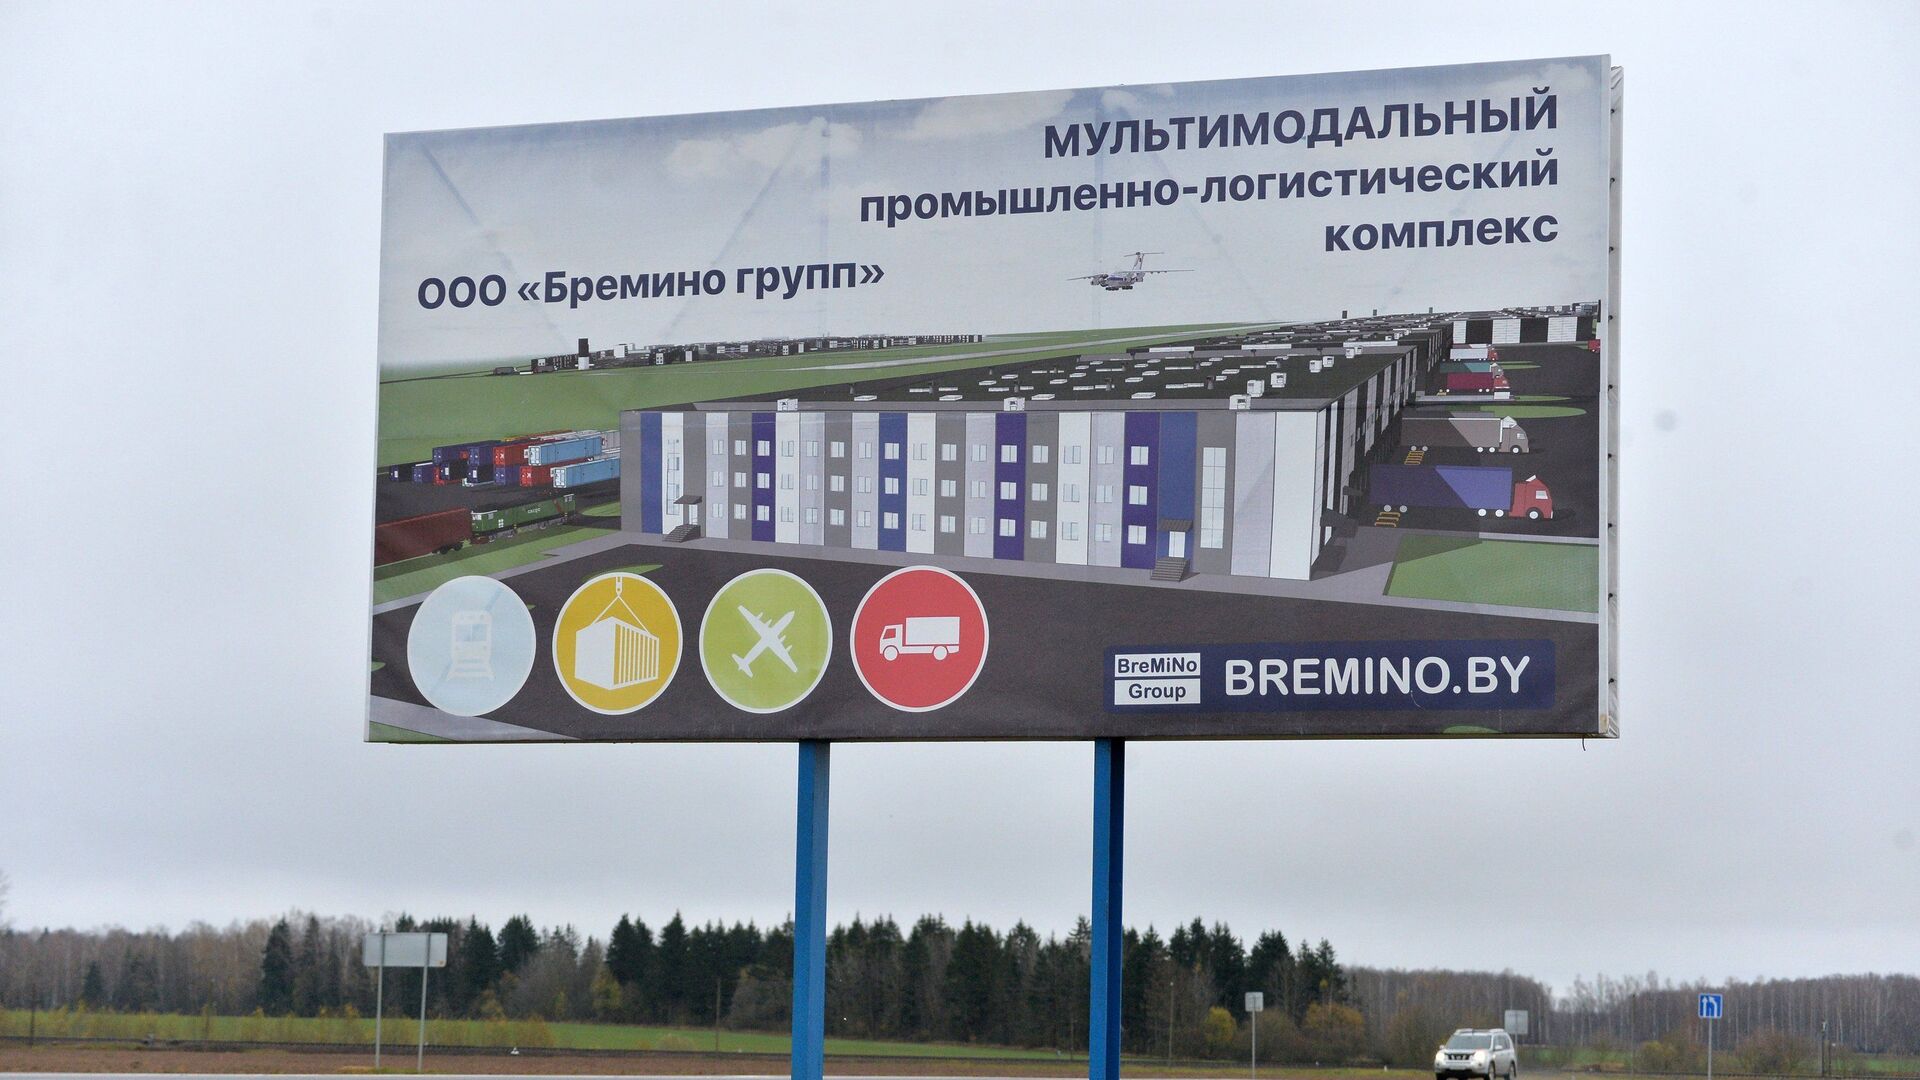 Национальный транзитный оператор Бремино Групп является заказчиком строительства комплекса в поселке Болбасово  - Sputnik Беларусь, 1920, 01.07.2021